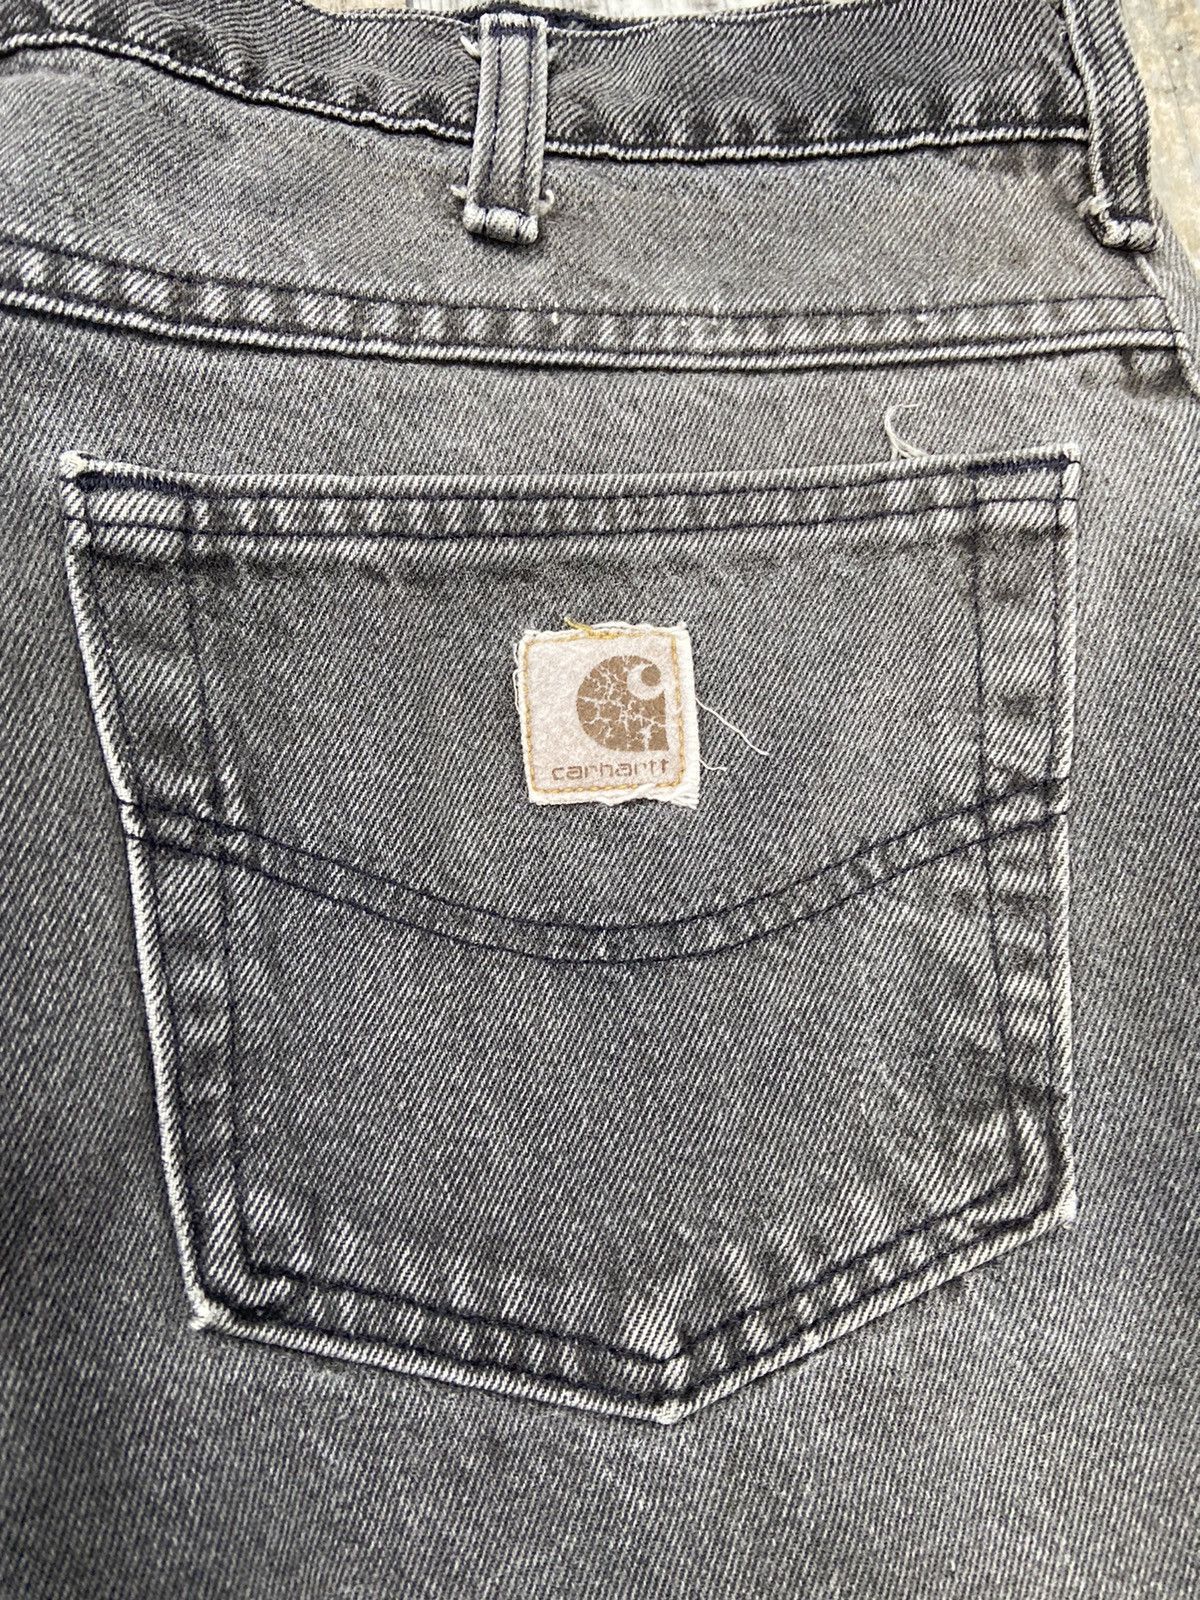 Vintage Vintage Carhartt Black Jeans 38x30 USA Size US 38 / EU 54 - 3 Thumbnail